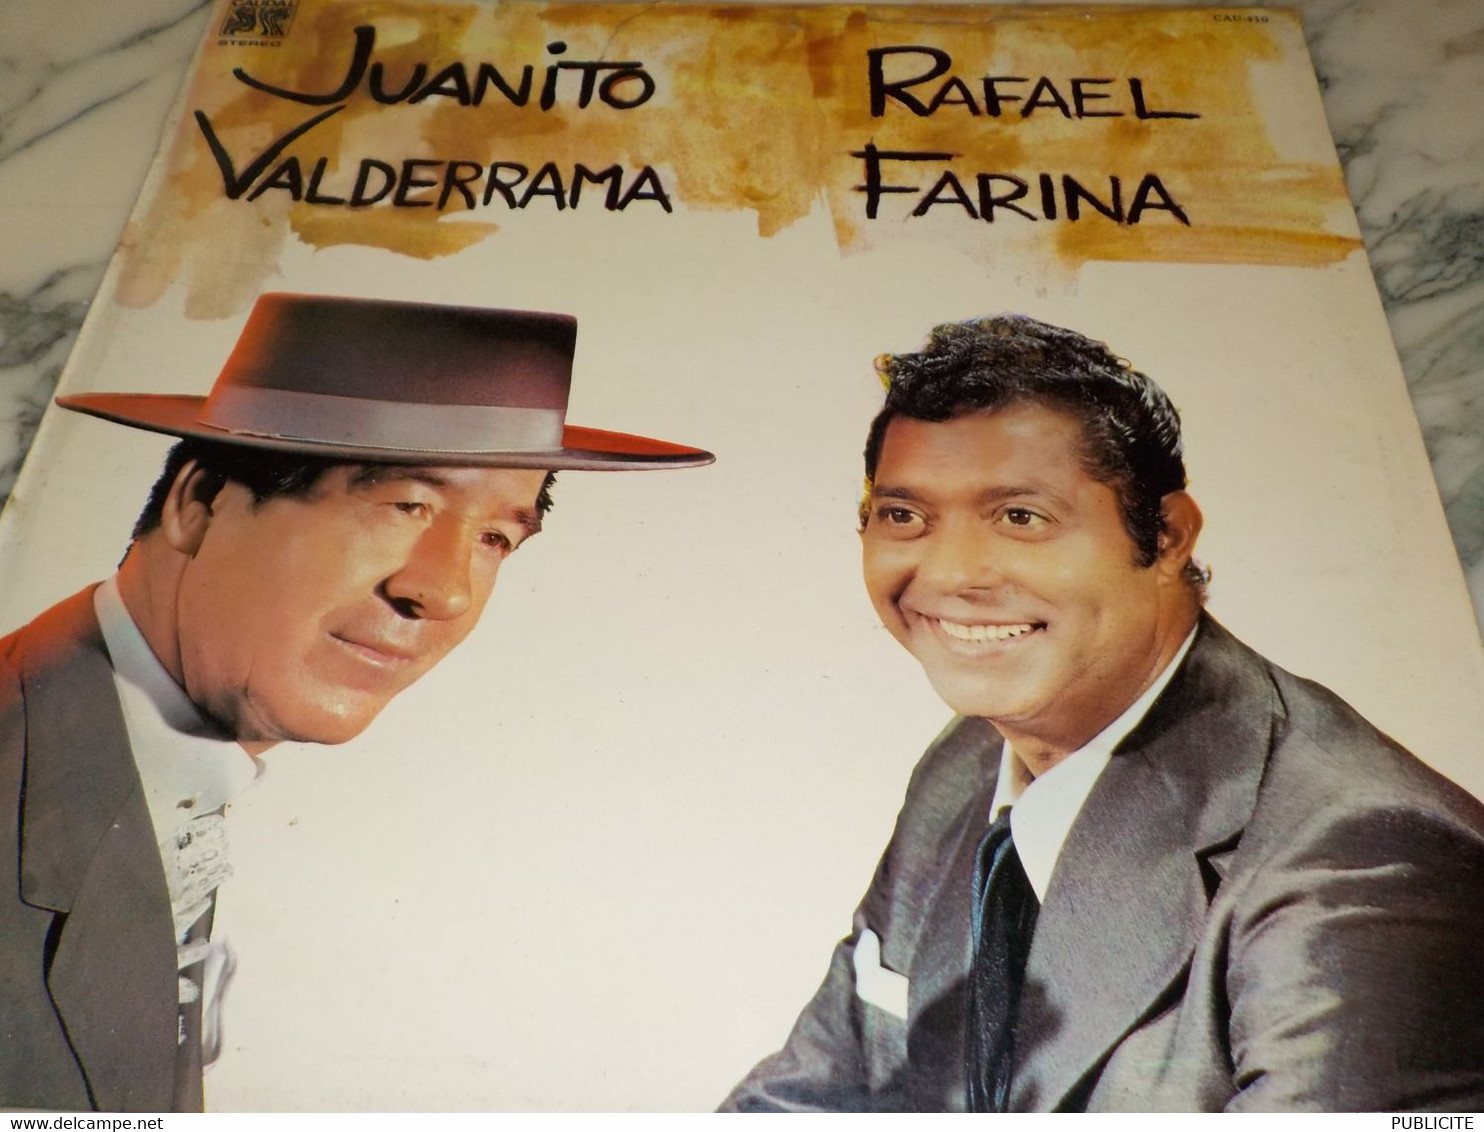 DISQUE 33 TOURS JUANITO VALDERRAMA ET RAFAEL FARINA 1976 - Otros - Canción Española